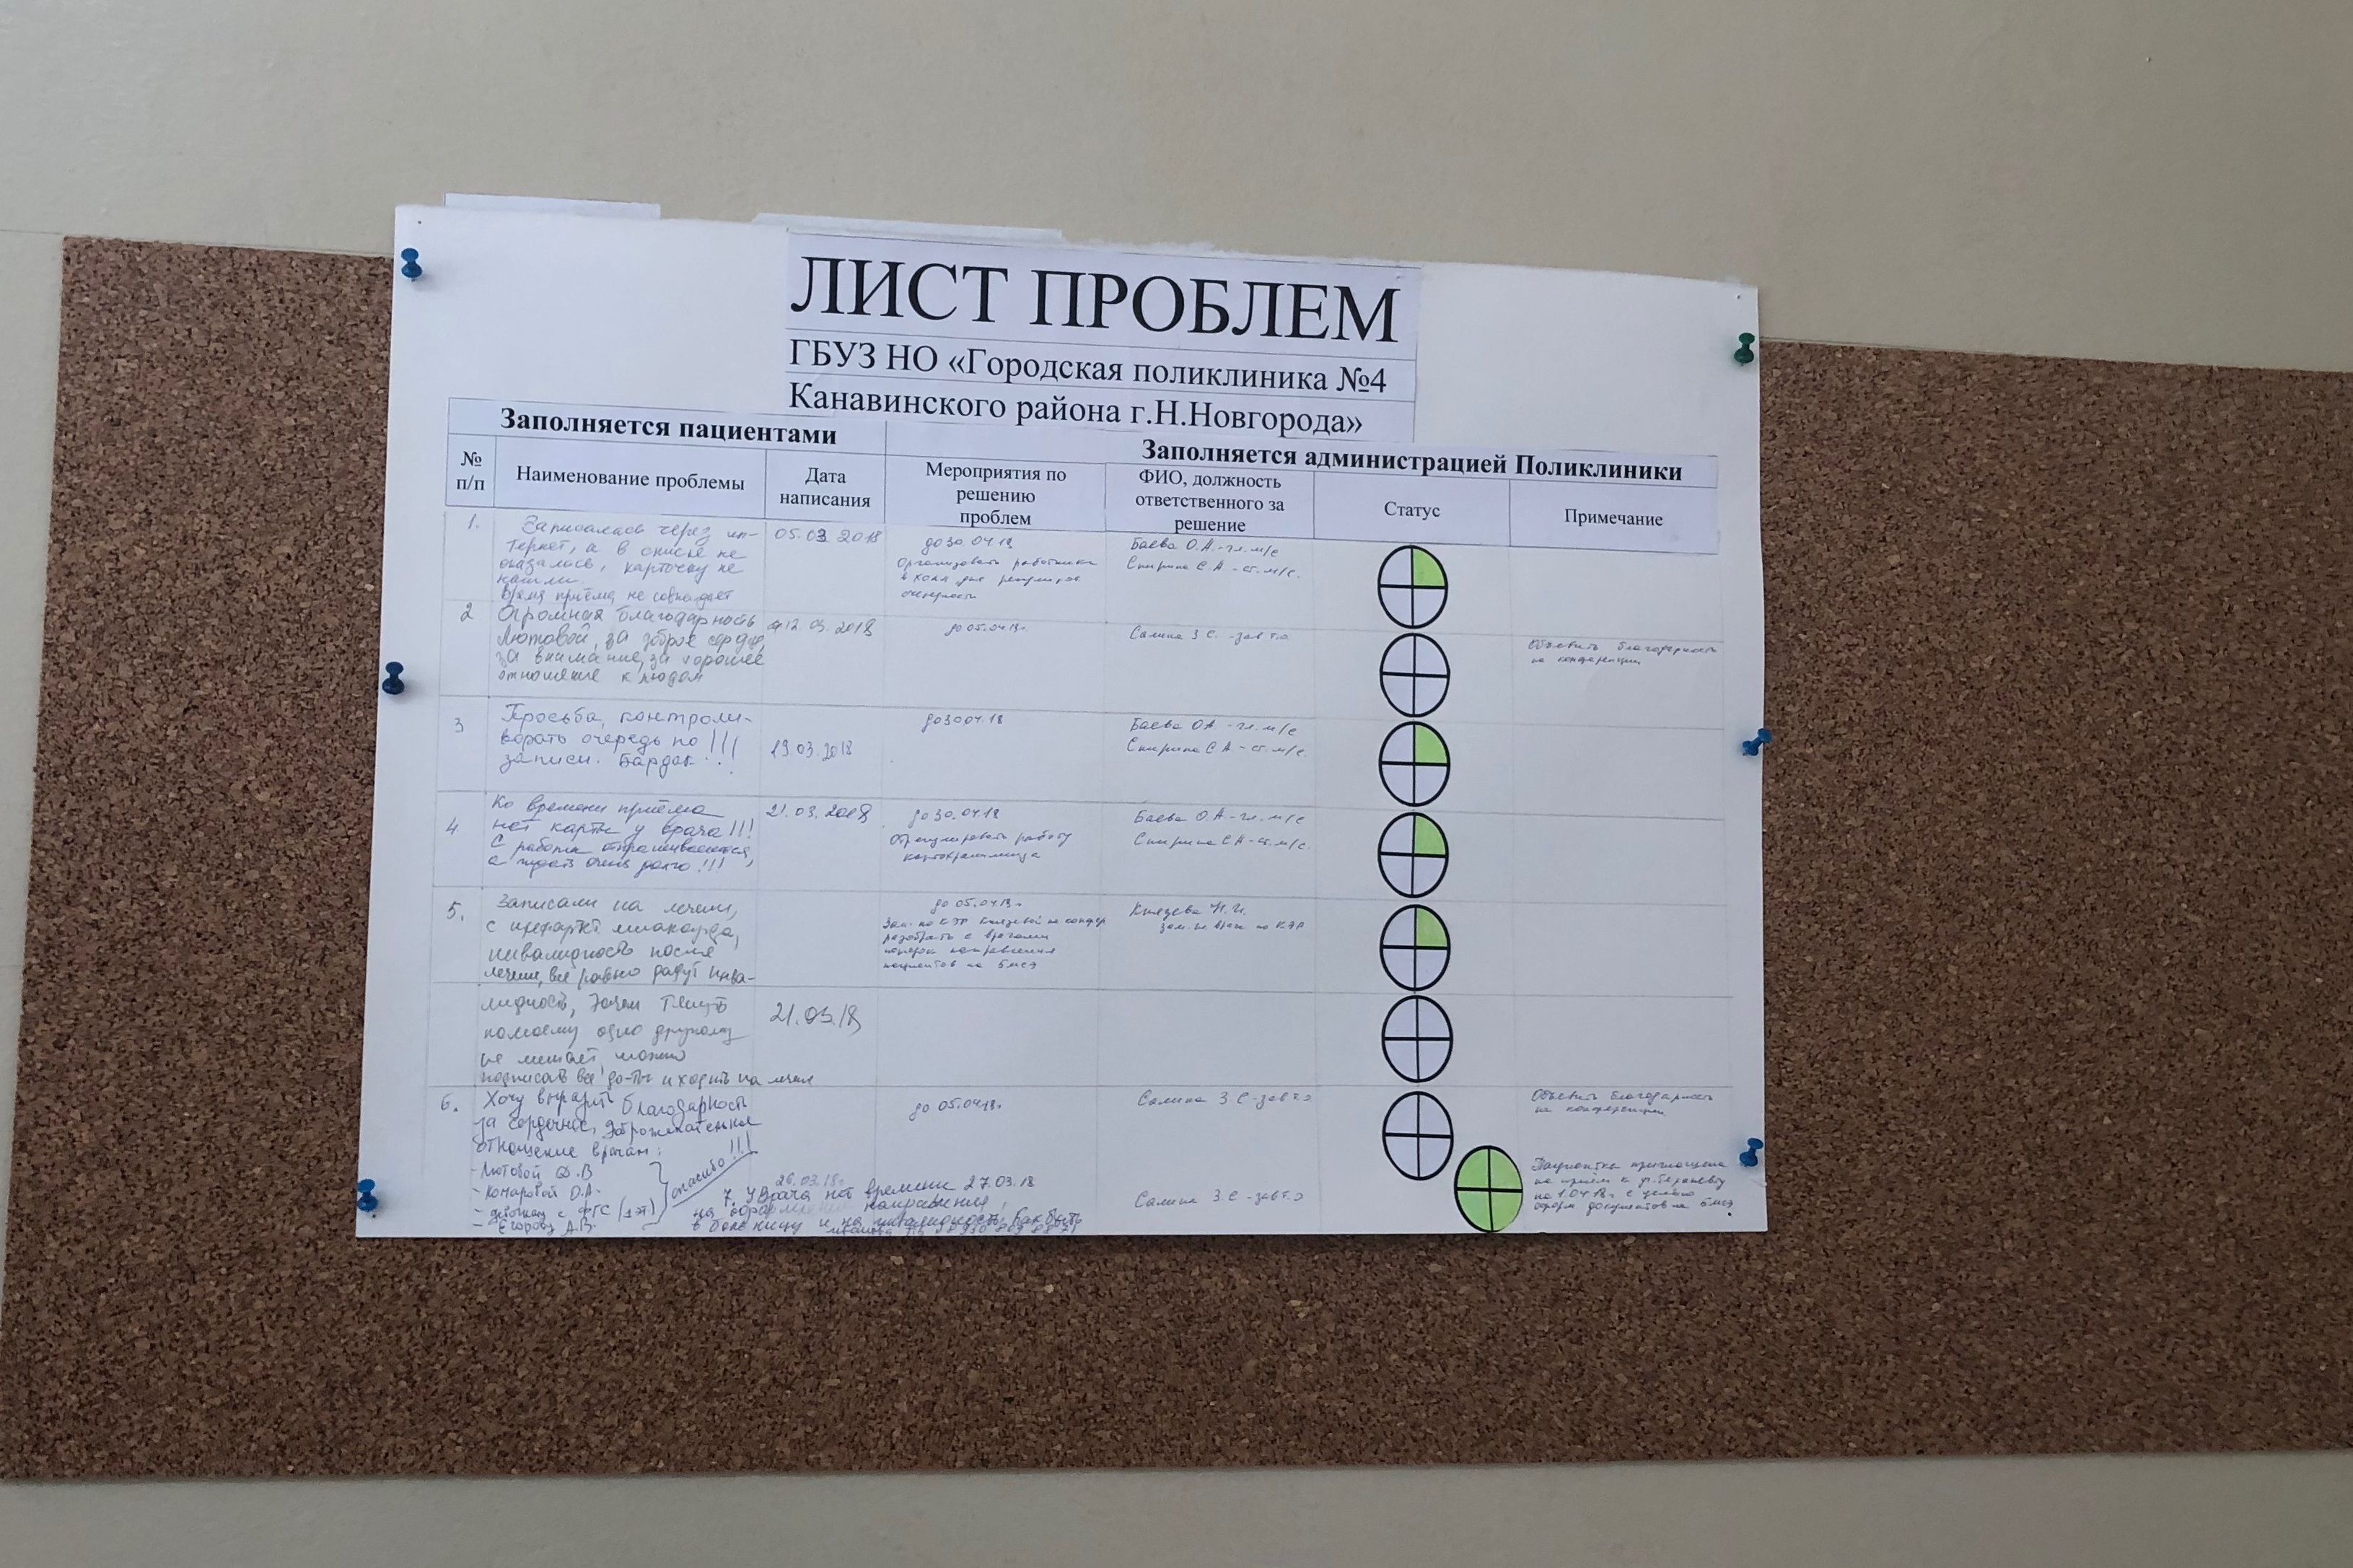 Kick-off Городской поликлиники №4 Канавинского района